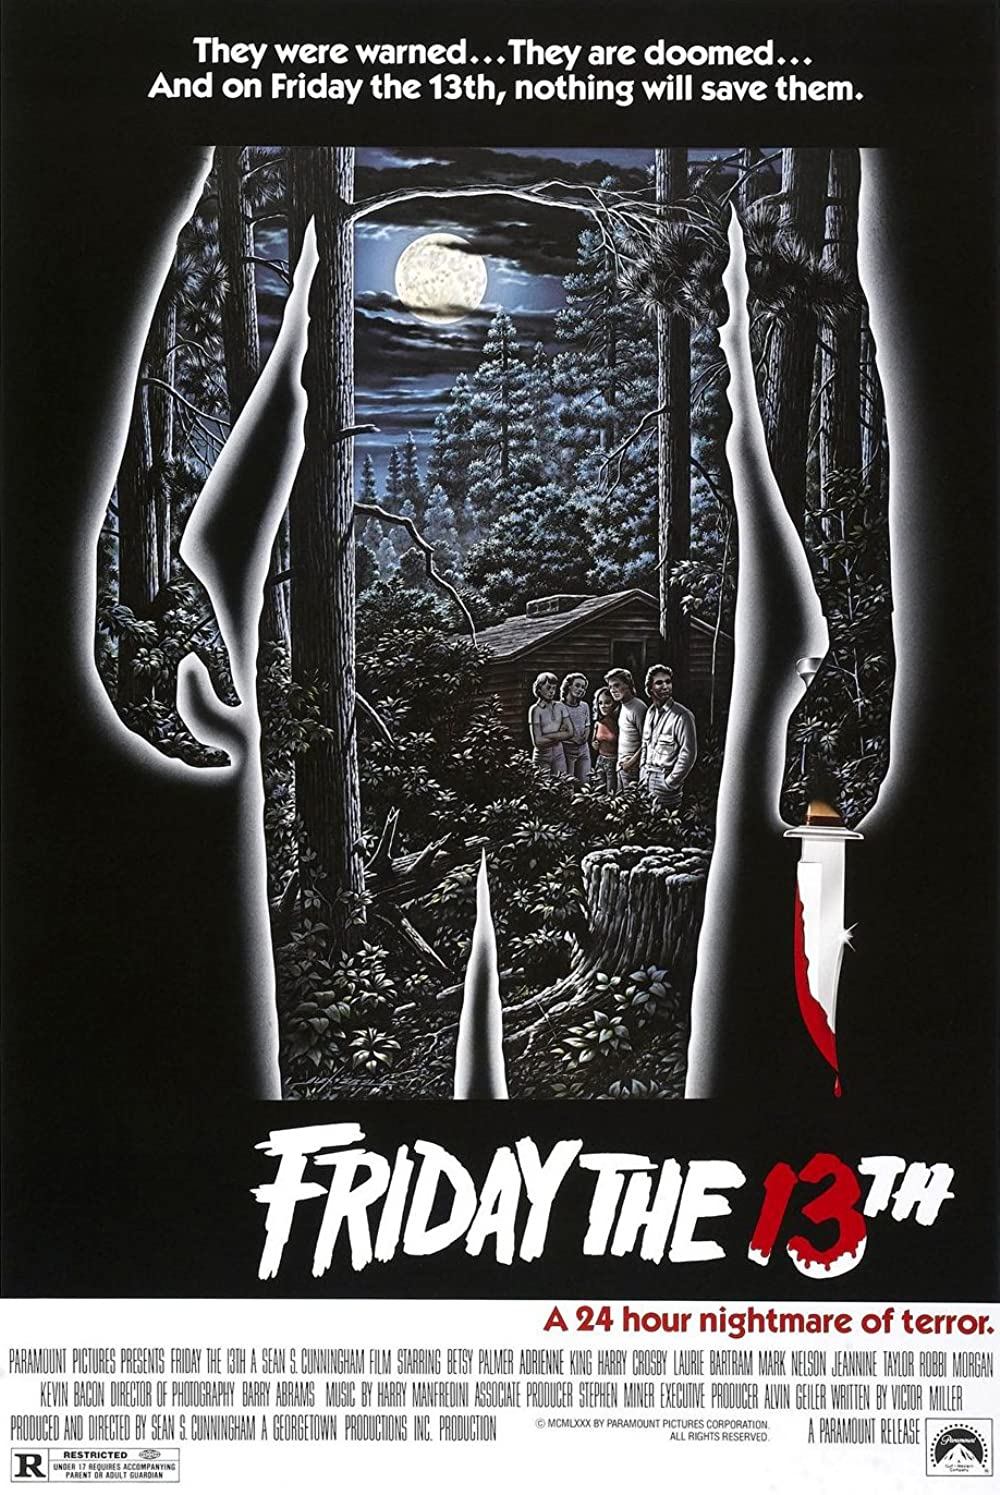 Filmbeschreibung zu Friday the 13th